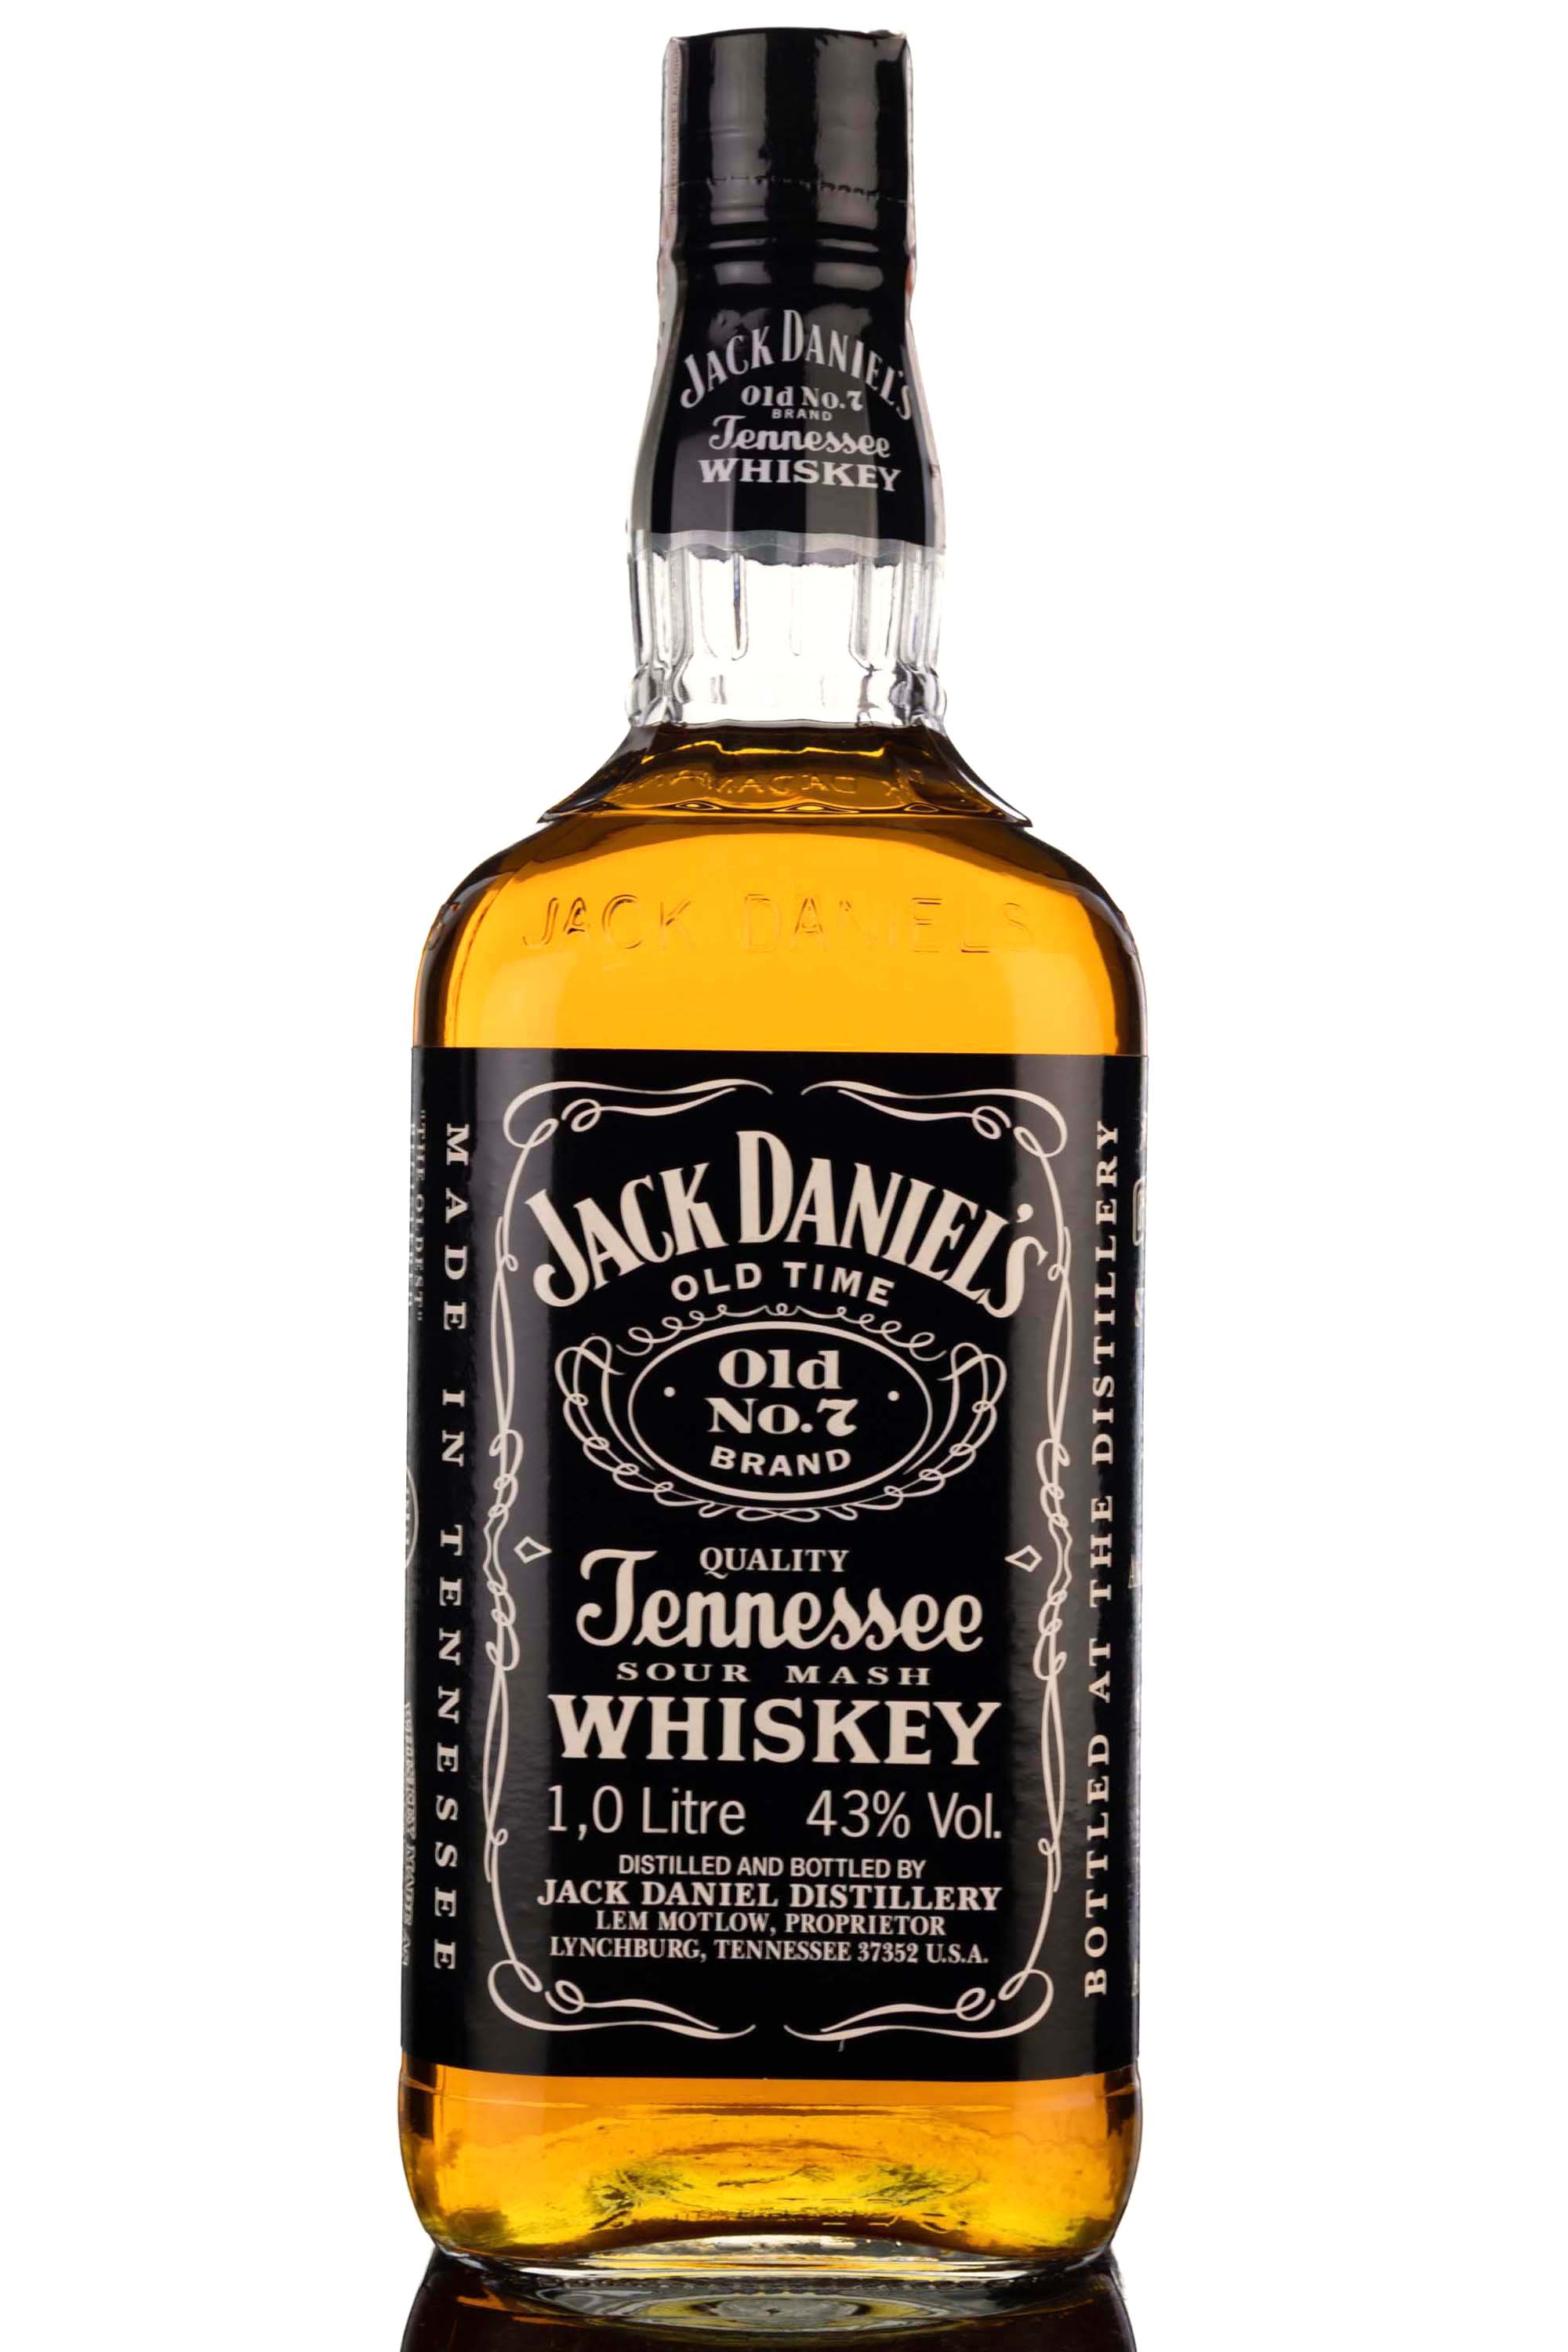 Jack Daniels Old No.7 Brand - 1 Litre